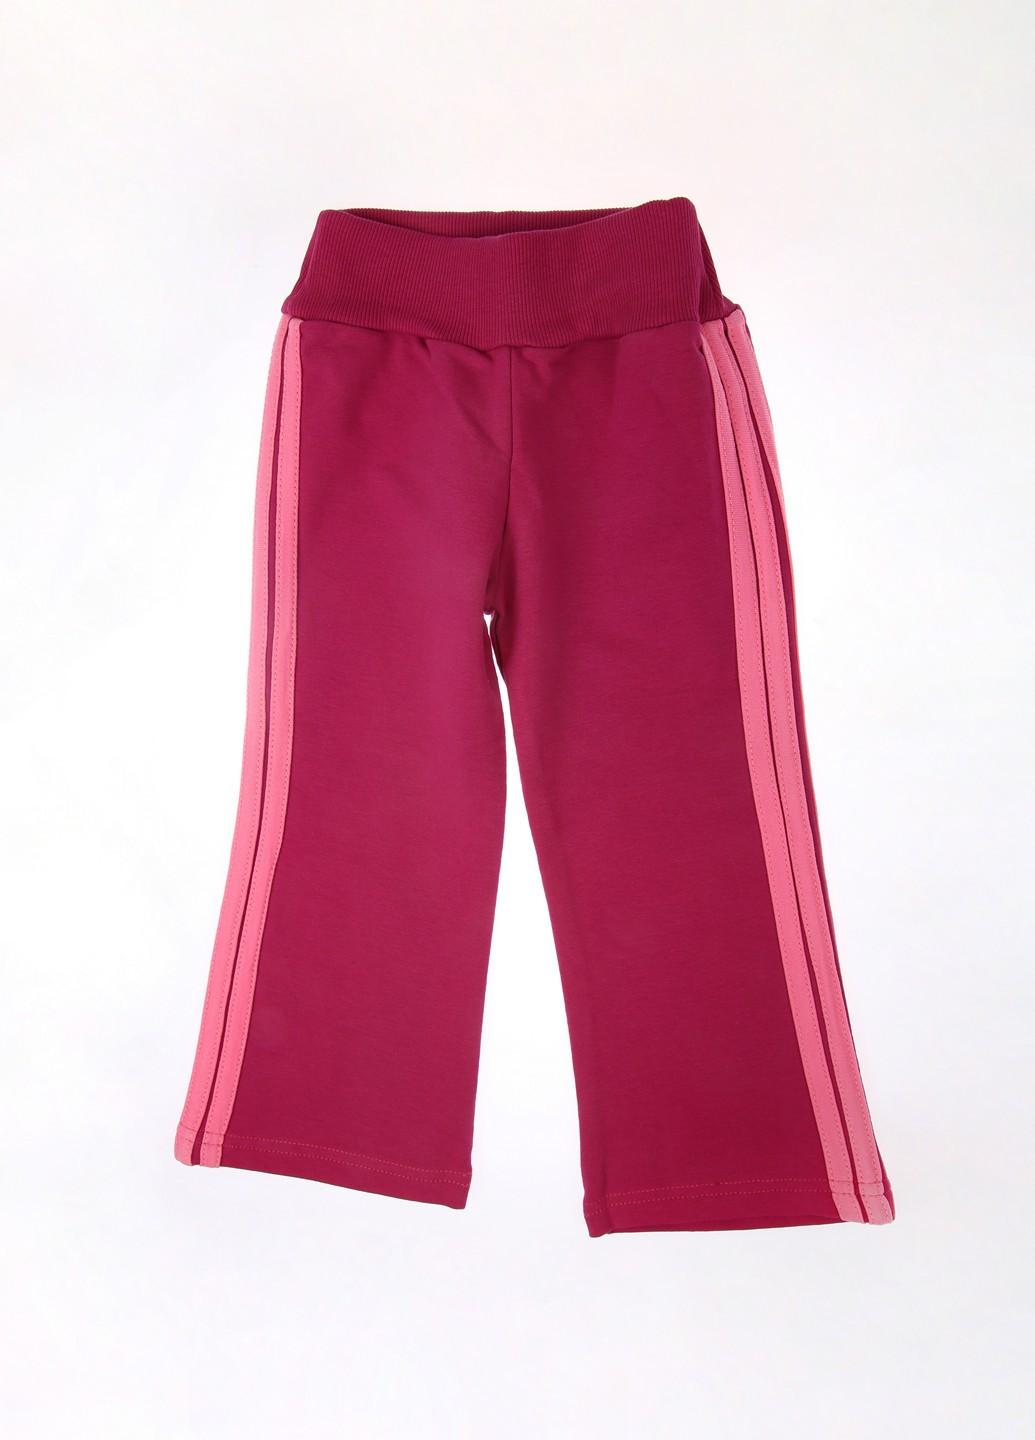 Фиолетовые спортивные демисезонные брюки Фламинго